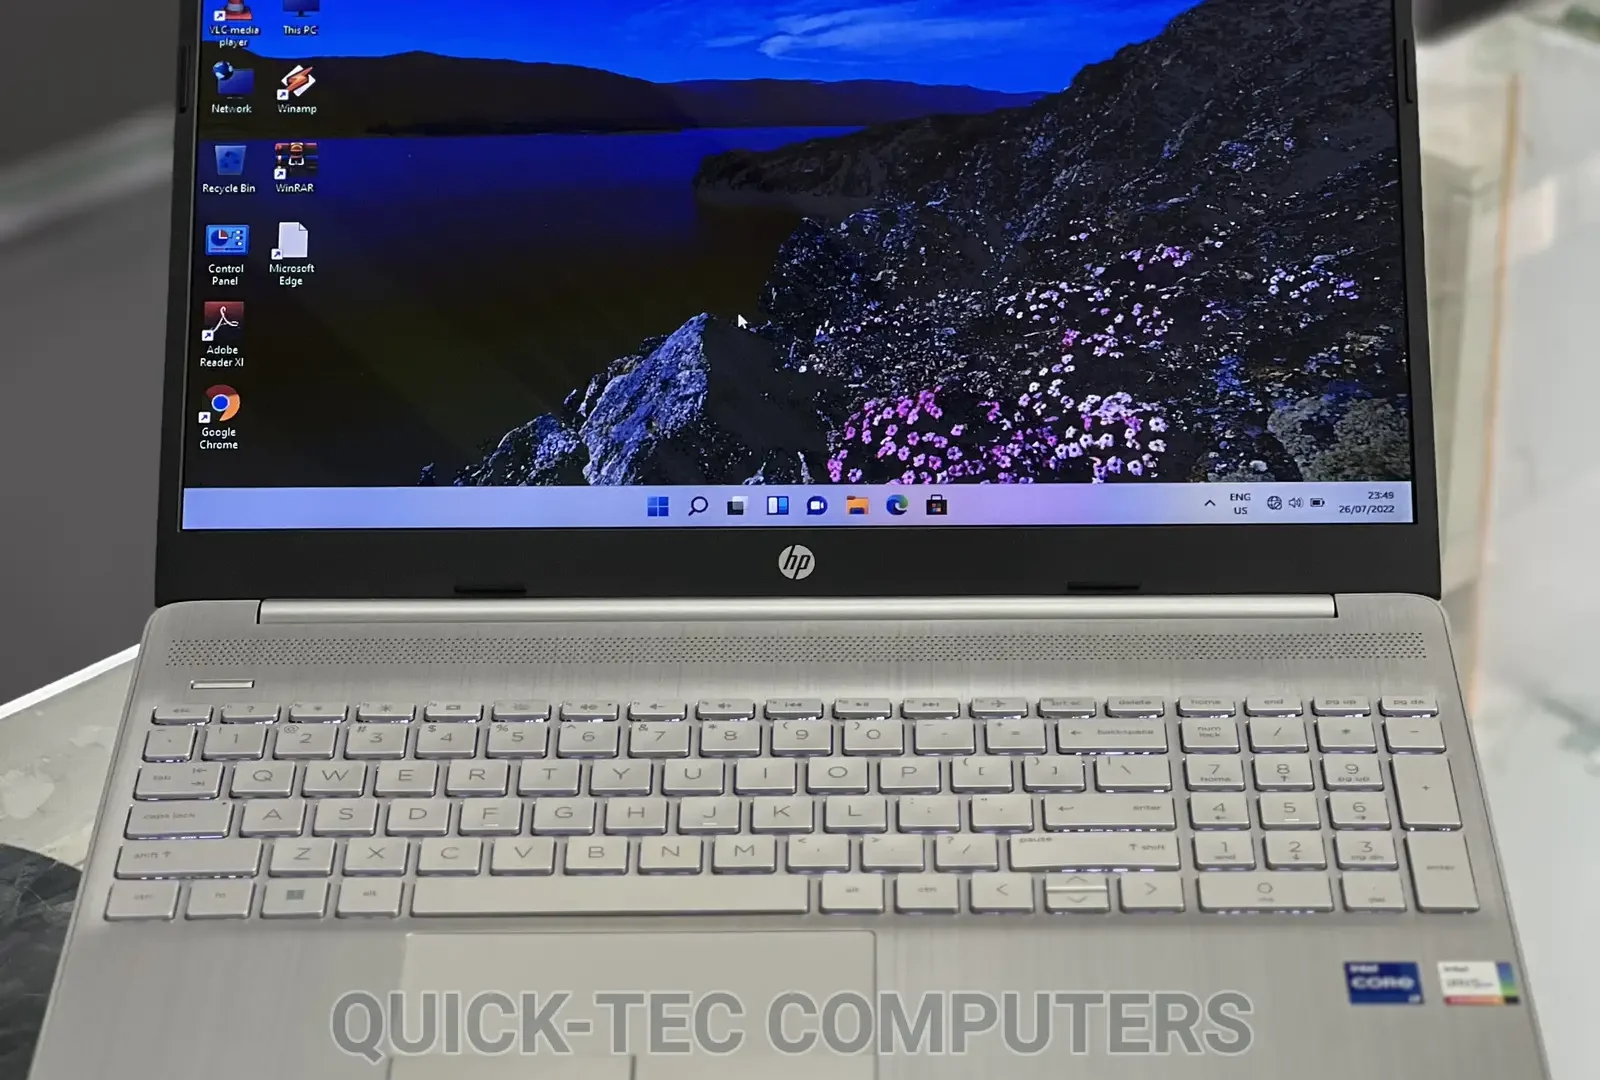 Laptop HP 15-Dw1197nia